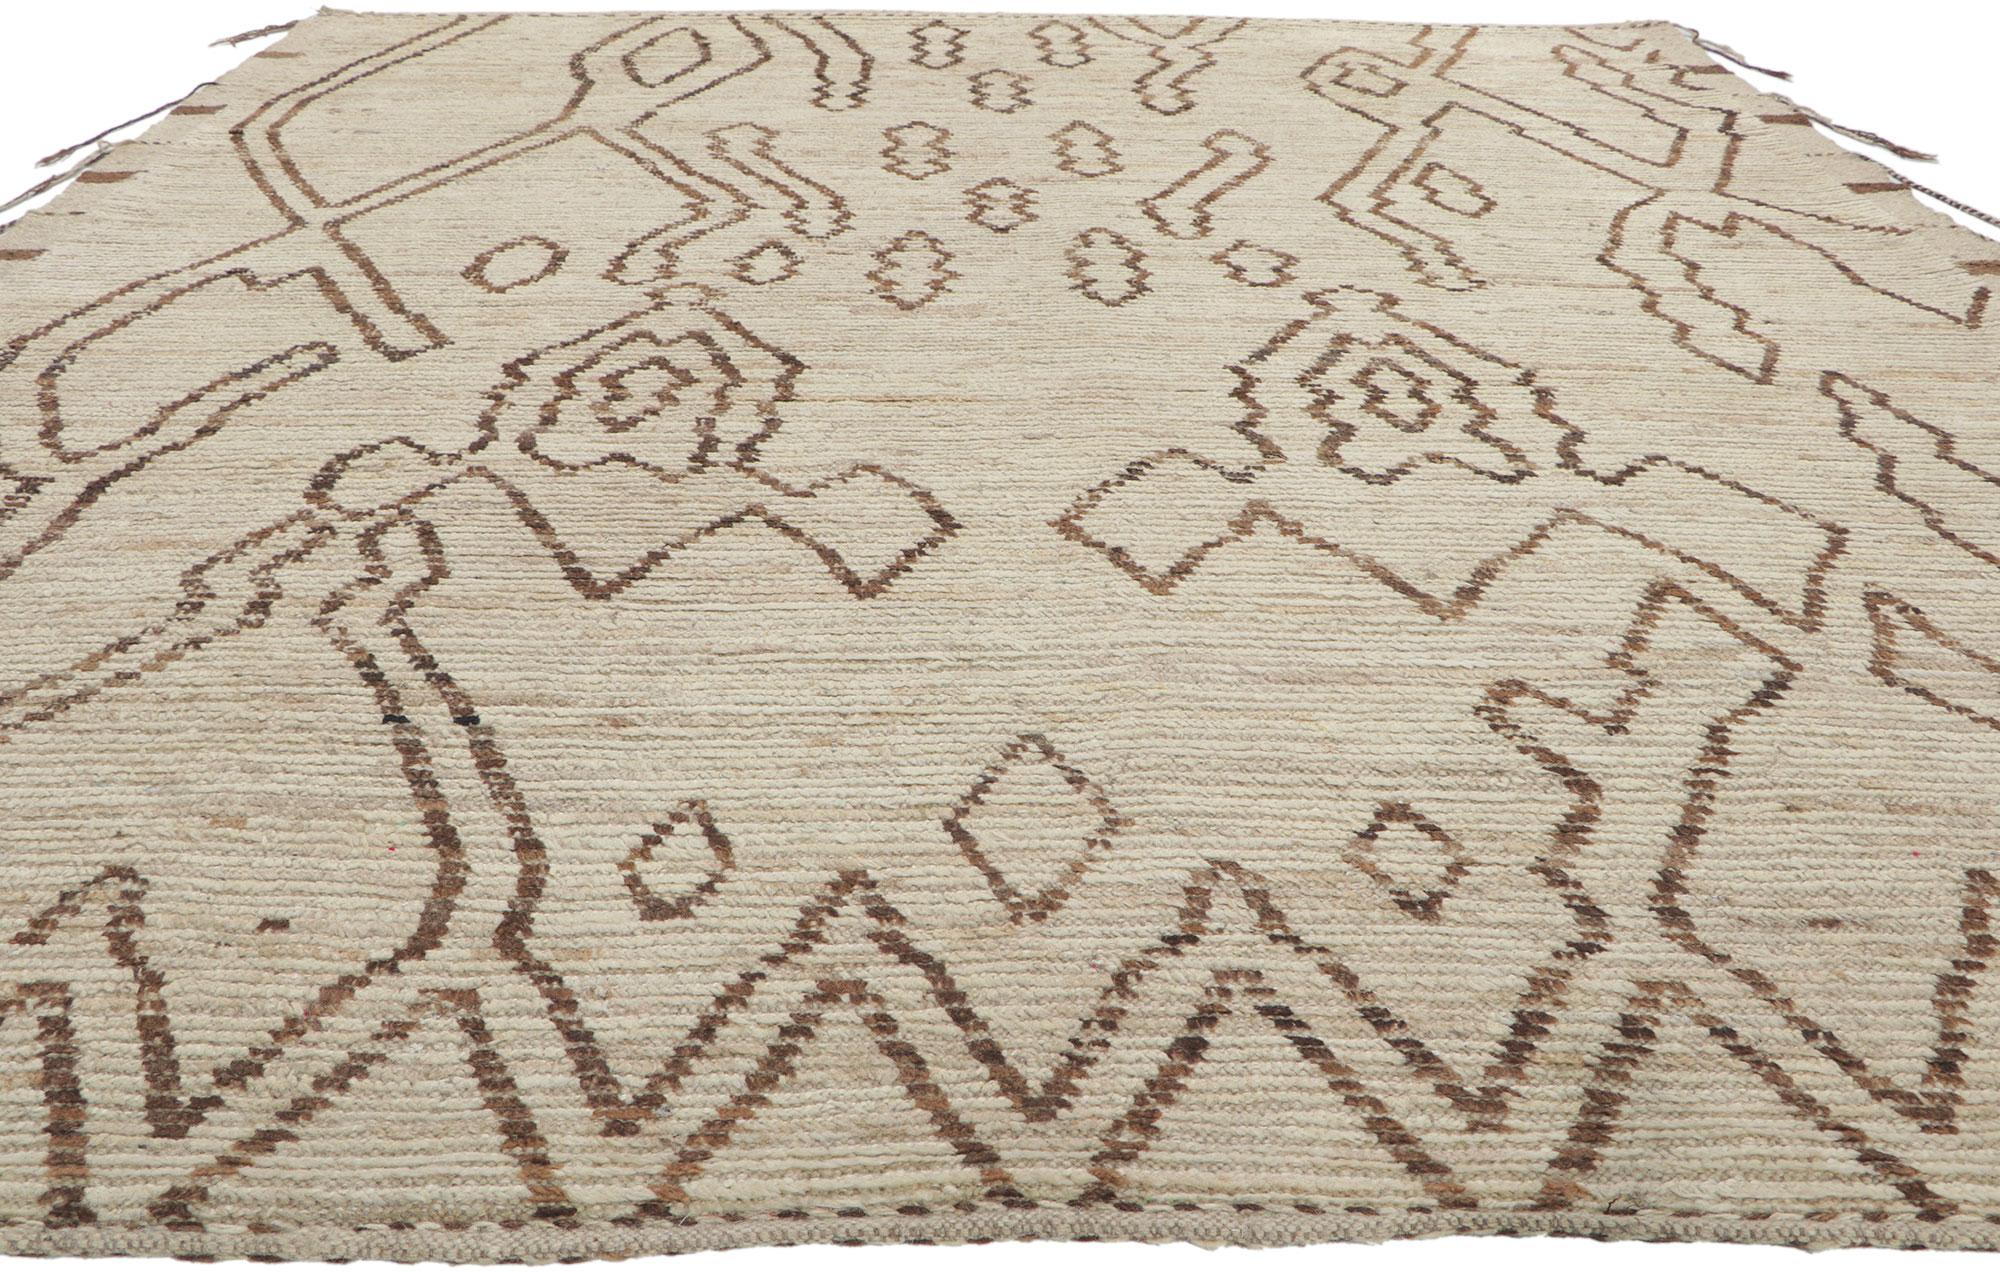 Tribal Nouveau tapis marocain contemporain en vente